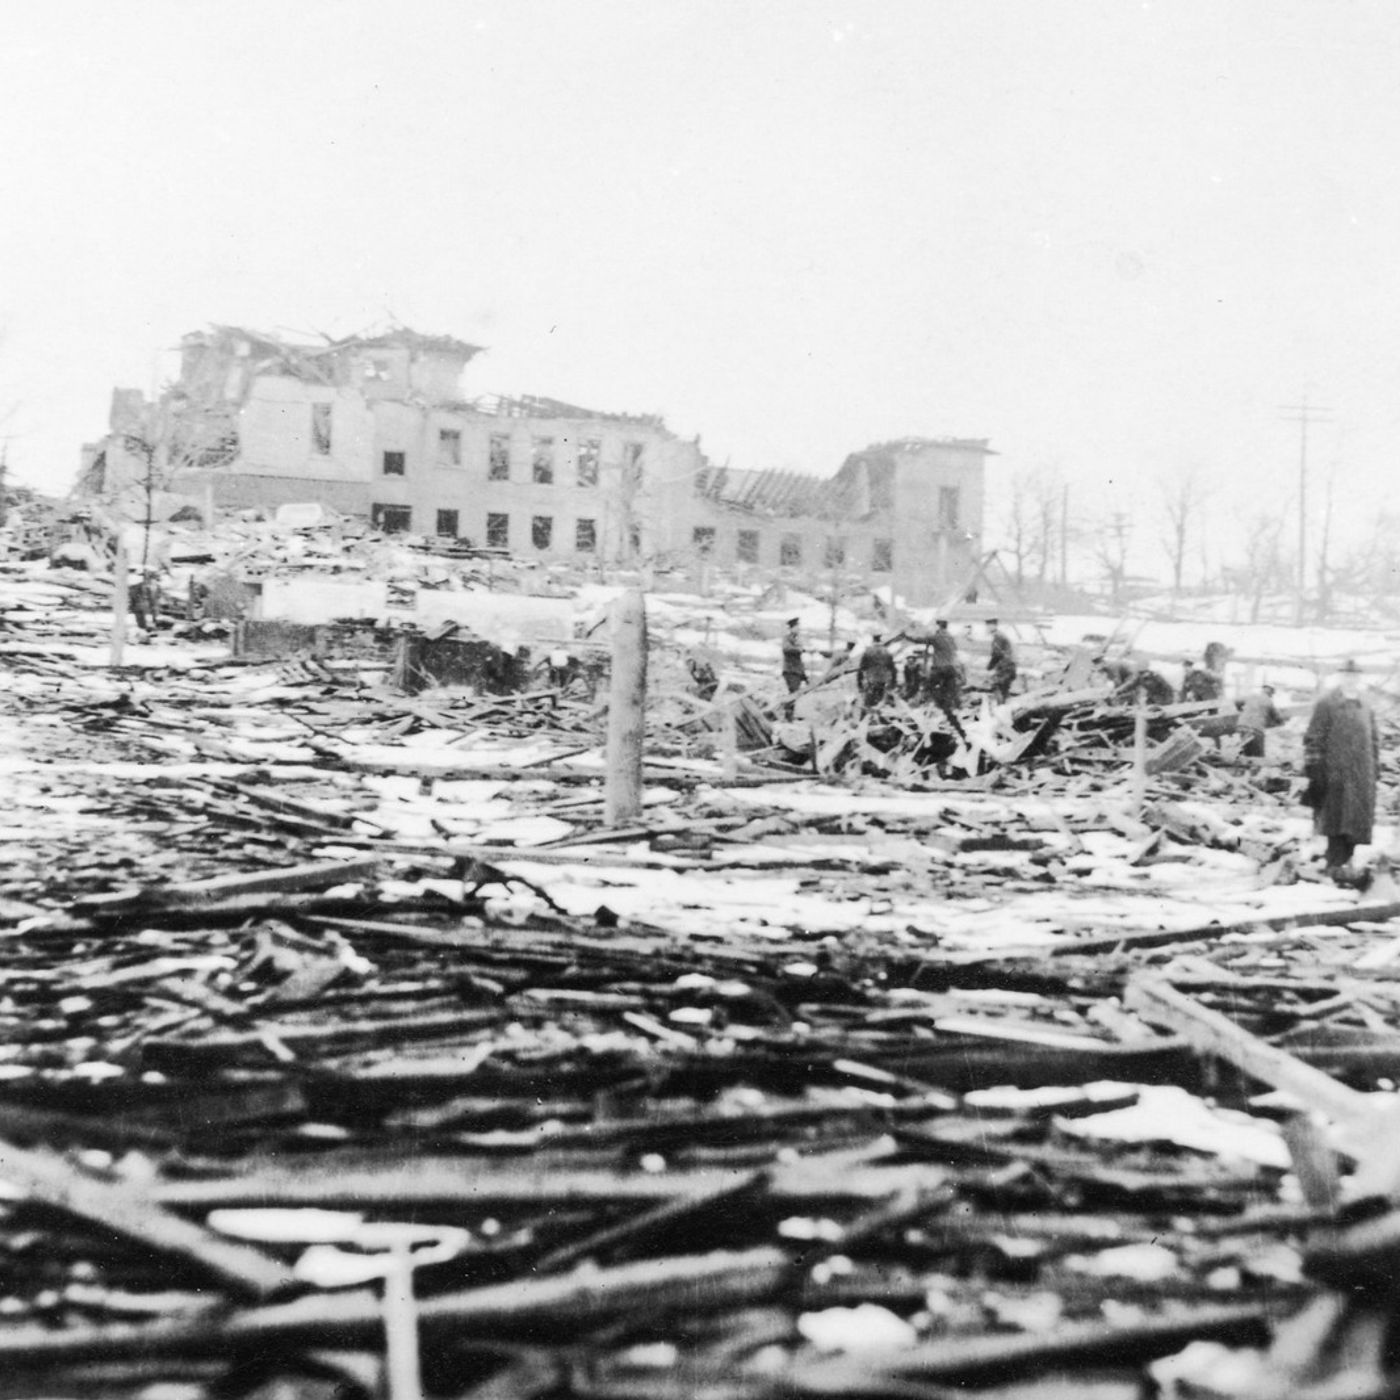 Halifax 1917, la più grande esplosione non nucleare della storia - AperiStoria #169